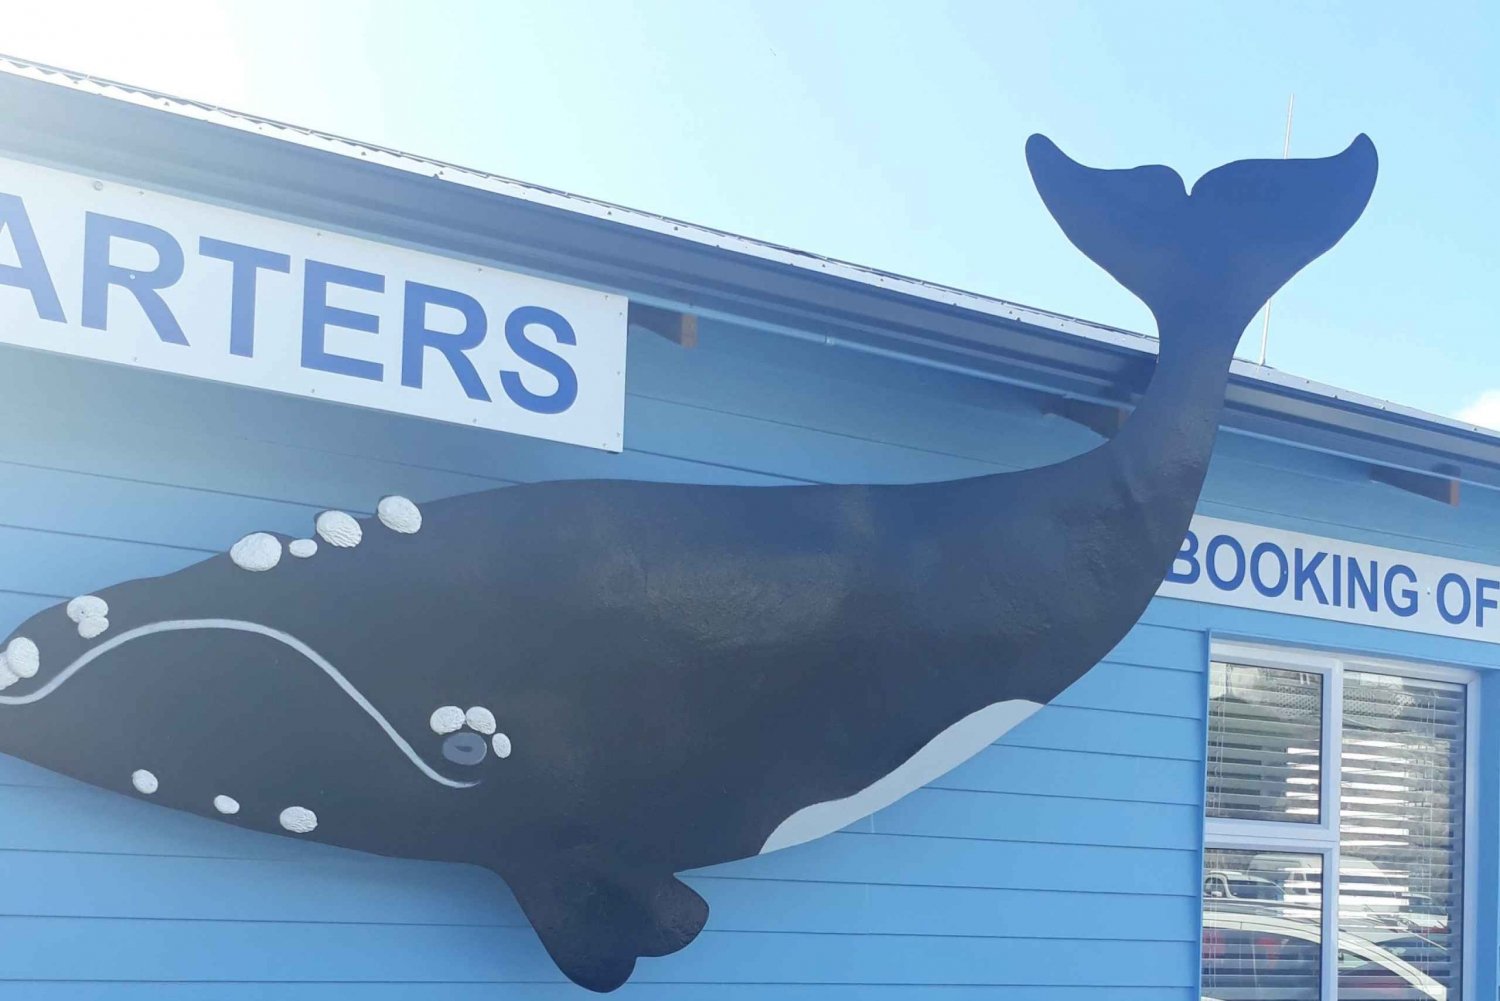 Da Cidade do Cabo: excursão de observação de baleias Hermanus com traslado